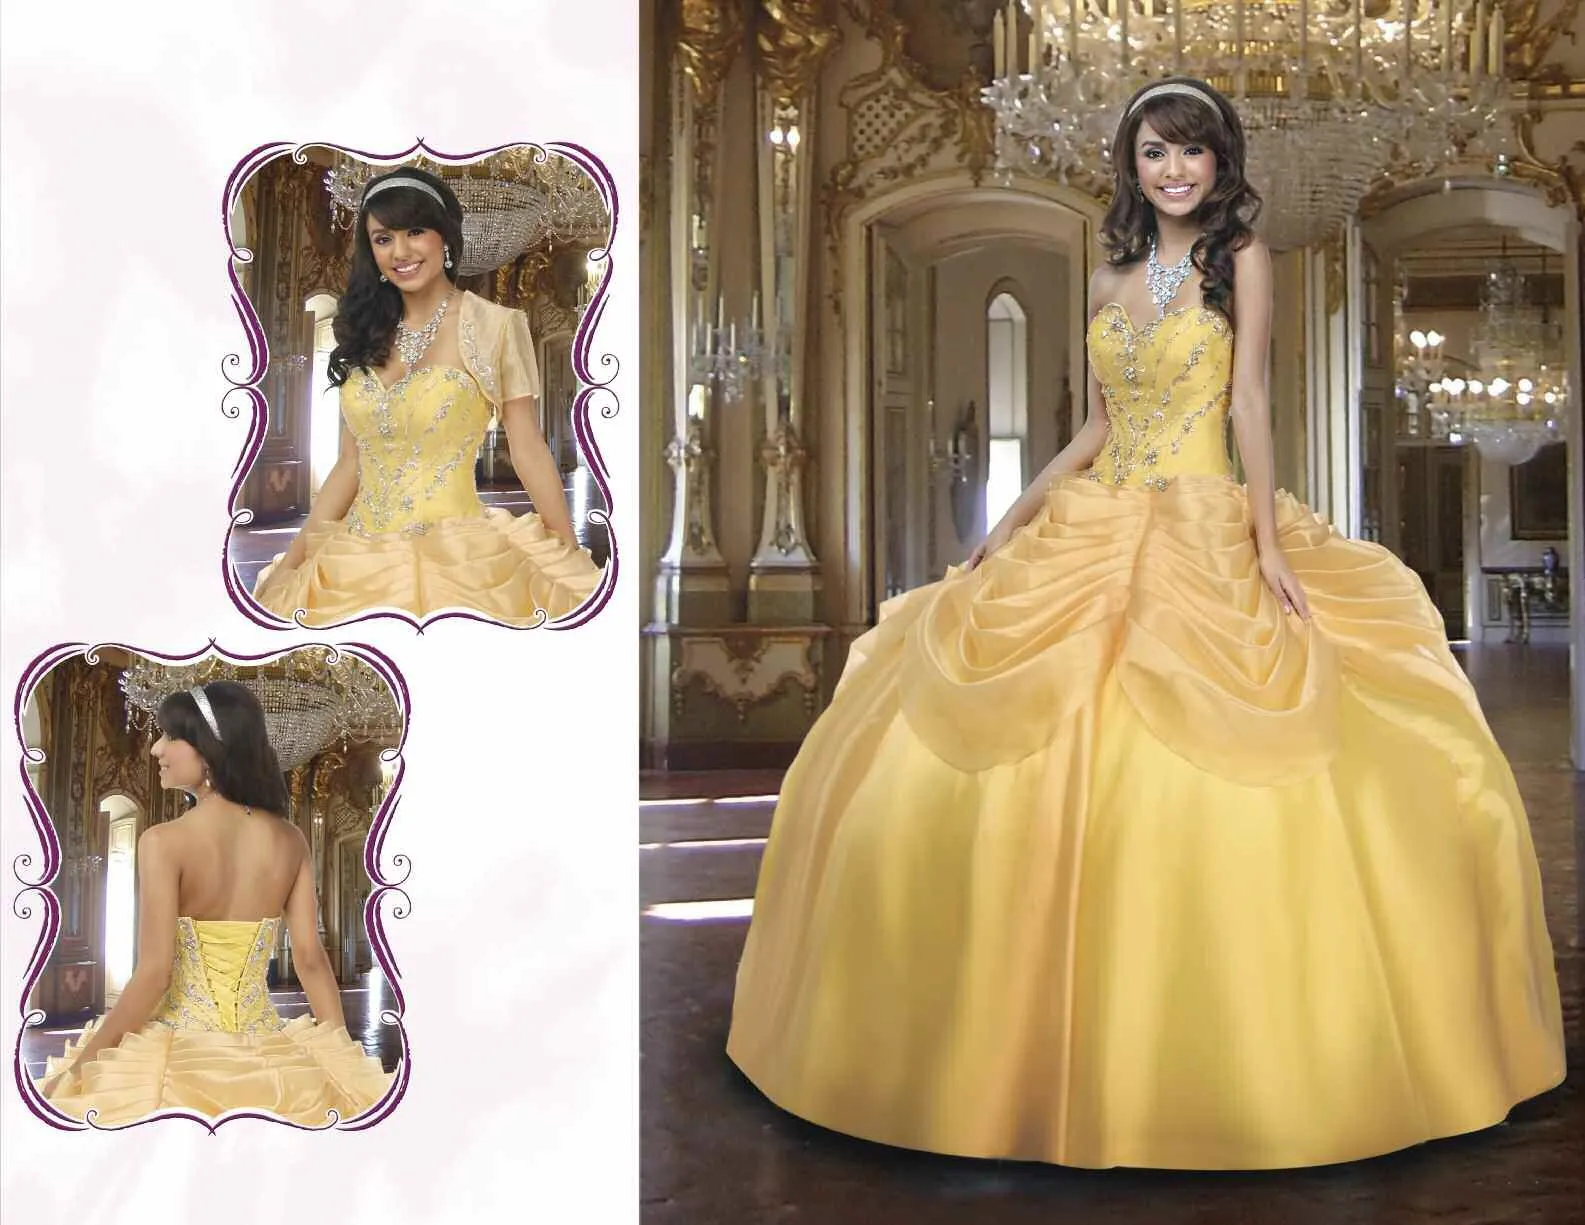 La Bella y la Bestia de Disney - Blog: Vestidos de Quinceañera ...